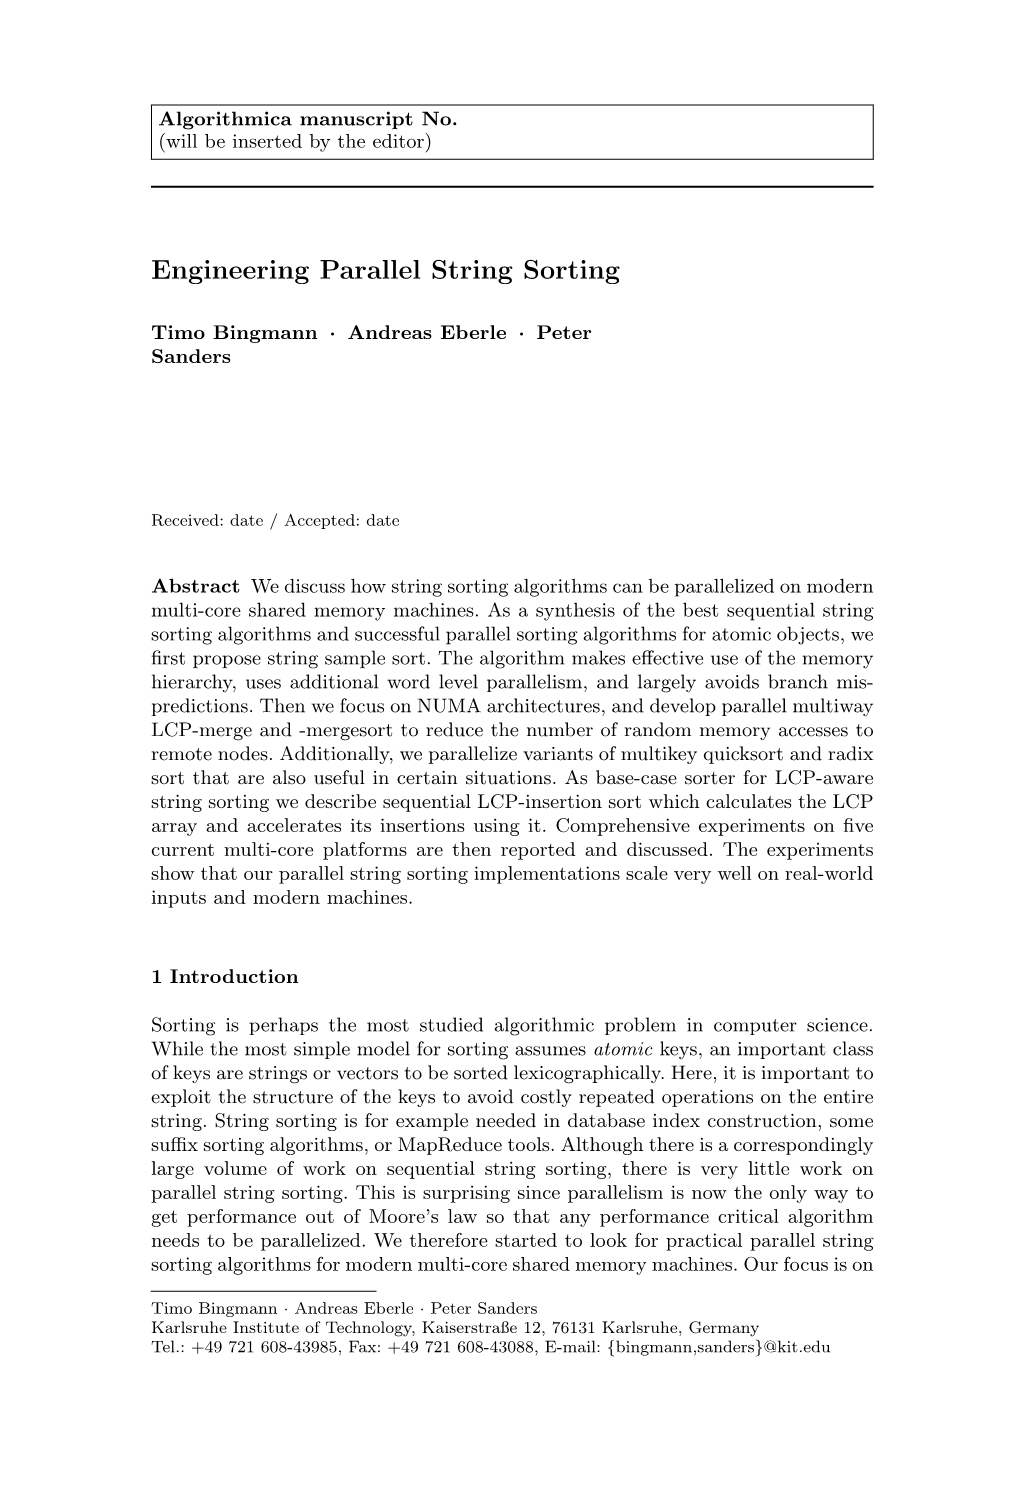 Engineering Parallel String Sorting